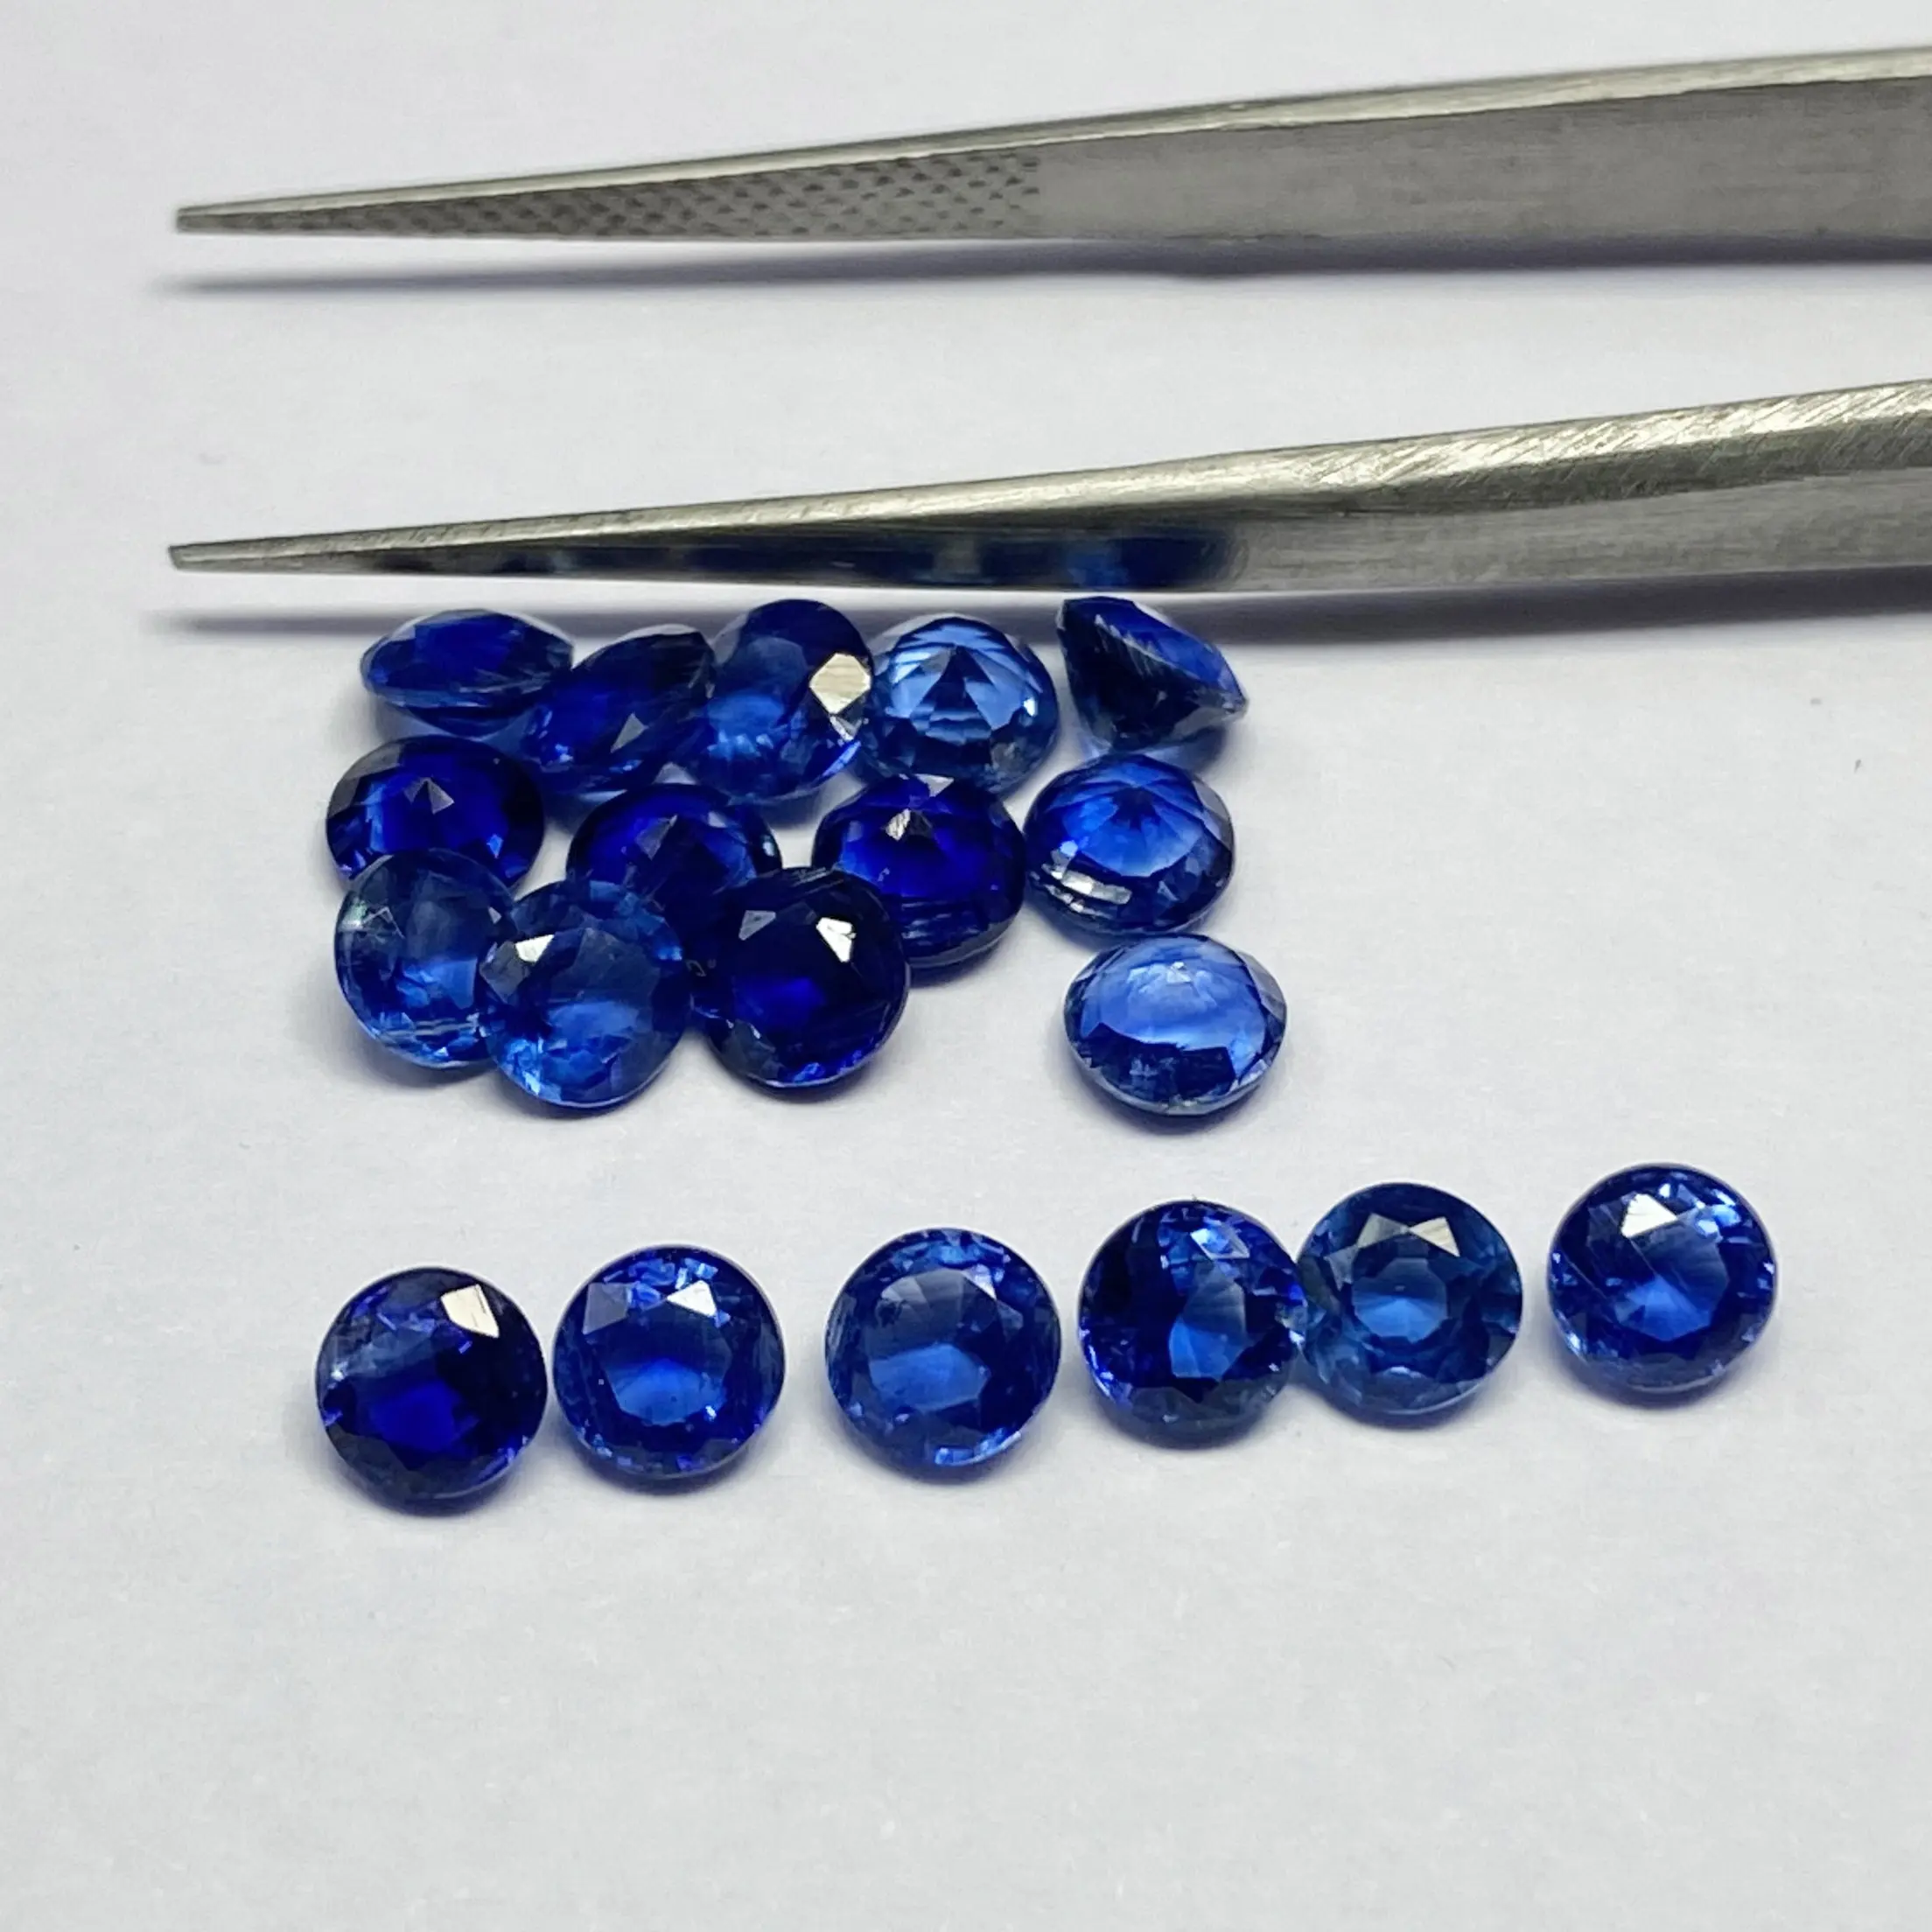 Excelente redondo facetado azul cianita 7mm pulido a mano piedras preciosas sueltas de alta calidad fabricación de joyas de piedras preciosas lote al por mayor